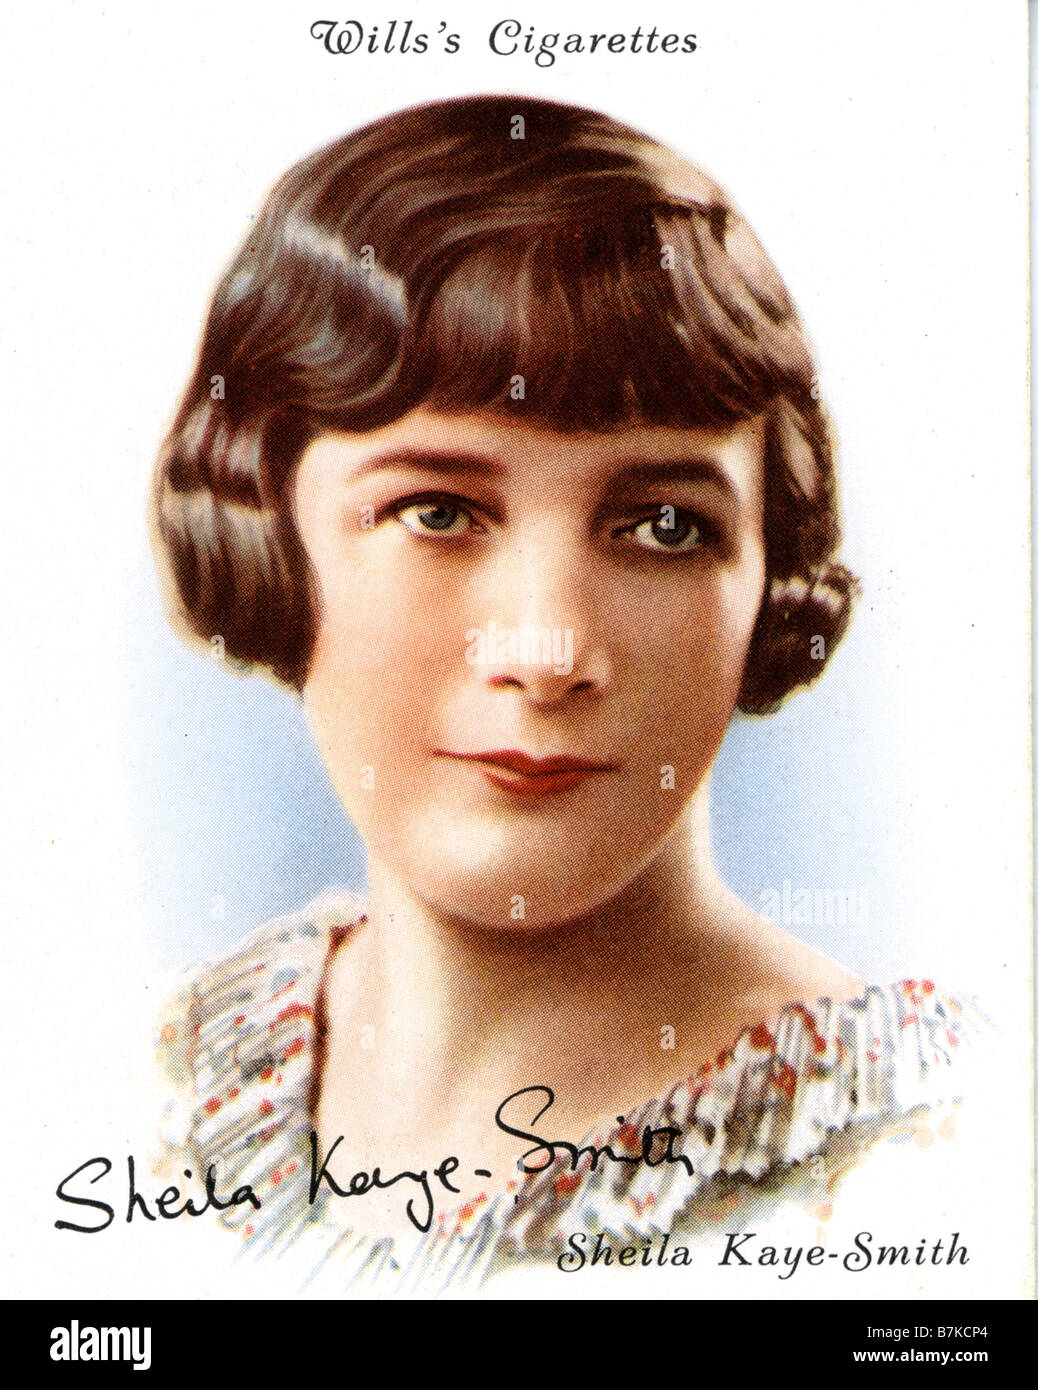 SHEILA KAYE-SMITH englische Schriftsteller und Romancier auf eine Zigarette Karte, 1930er Jahre Stockfoto